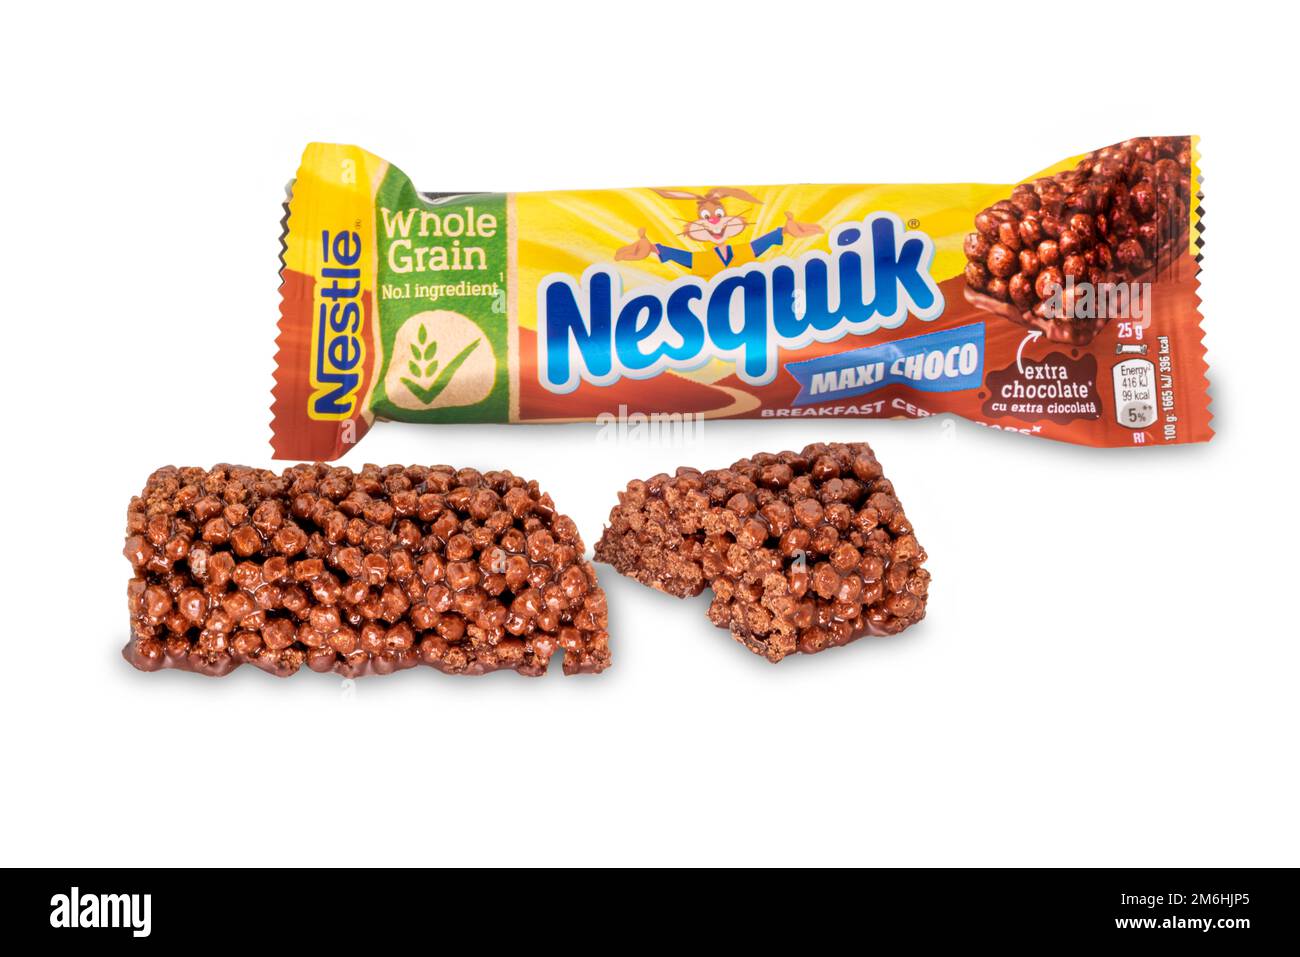 Italia - 04 gennaio 2023: Nestle Nesquik maxi cioccolato colazione barretta di cereali, pacchetto e barra rotta tagliato primo piano, isolato su bianco con percorso di ritaglio Foto Stock